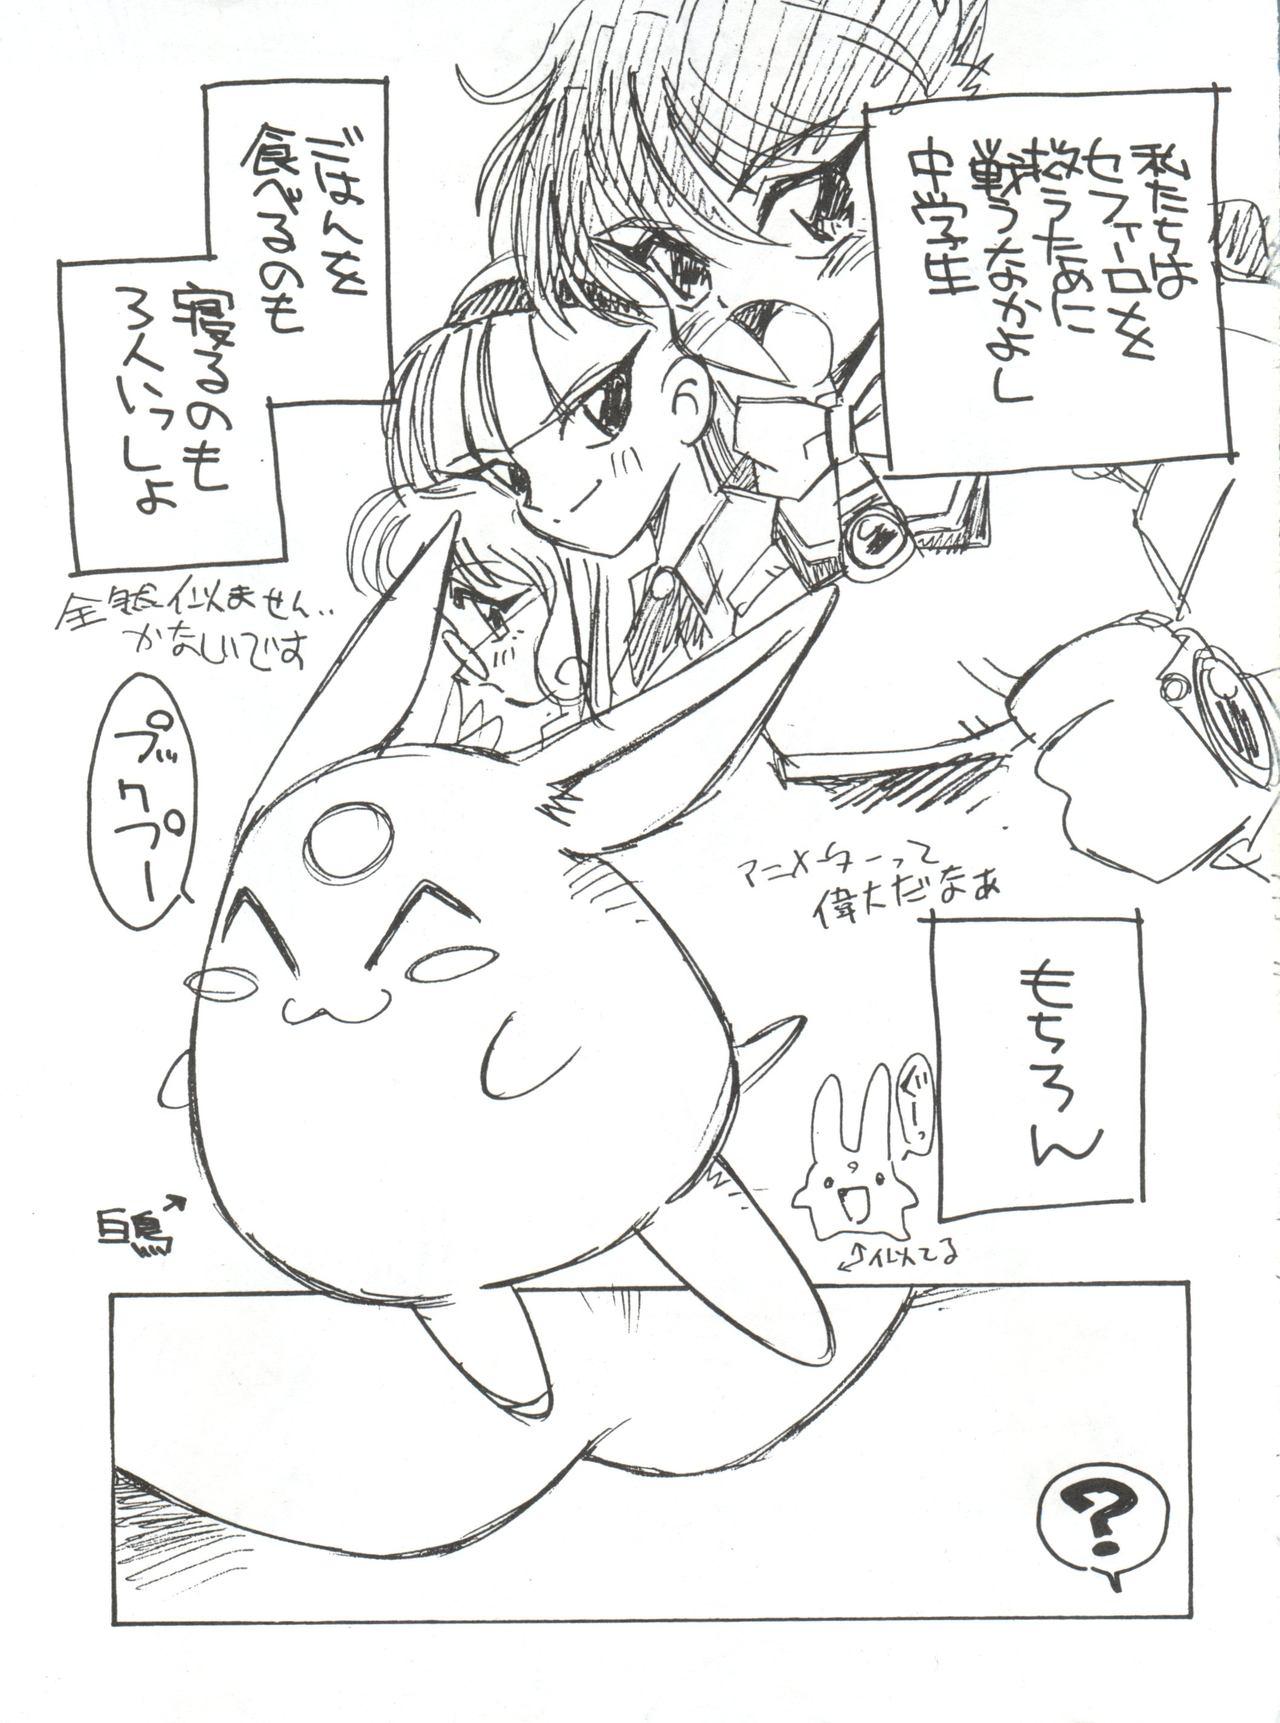 Creamy Zokuzoku Sanbiki ga Kiru! Shiratori wa Seifu no Inu - Magic knight rayearth Lips - Page 5